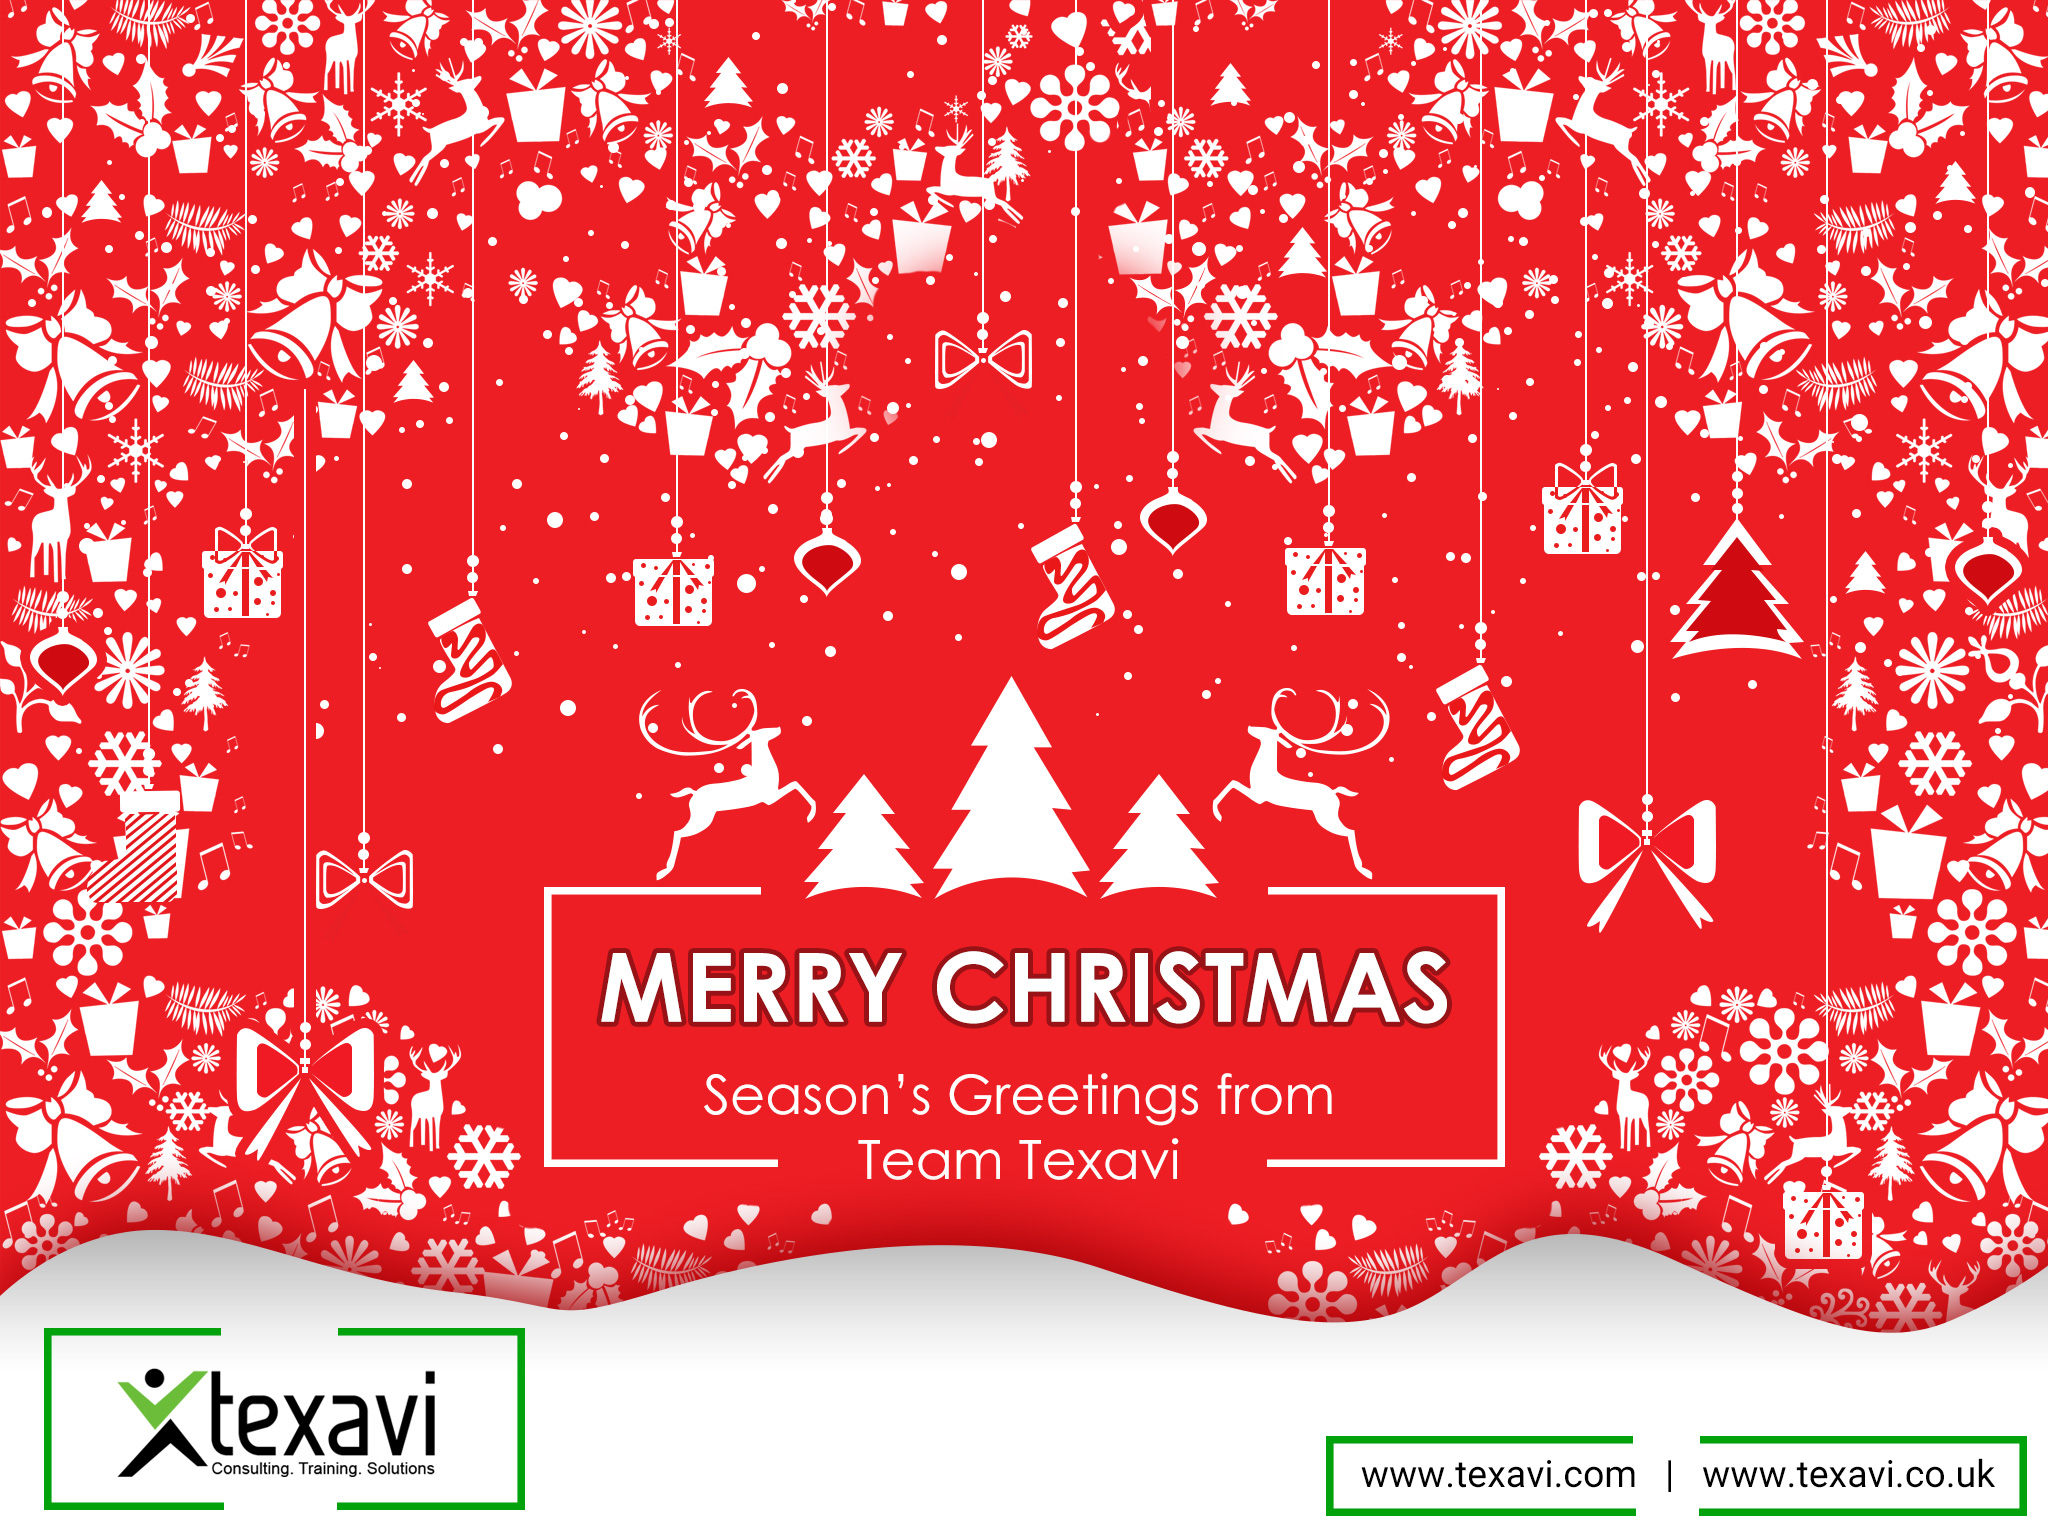 Texavi wishes you a Merry Christmas 2017